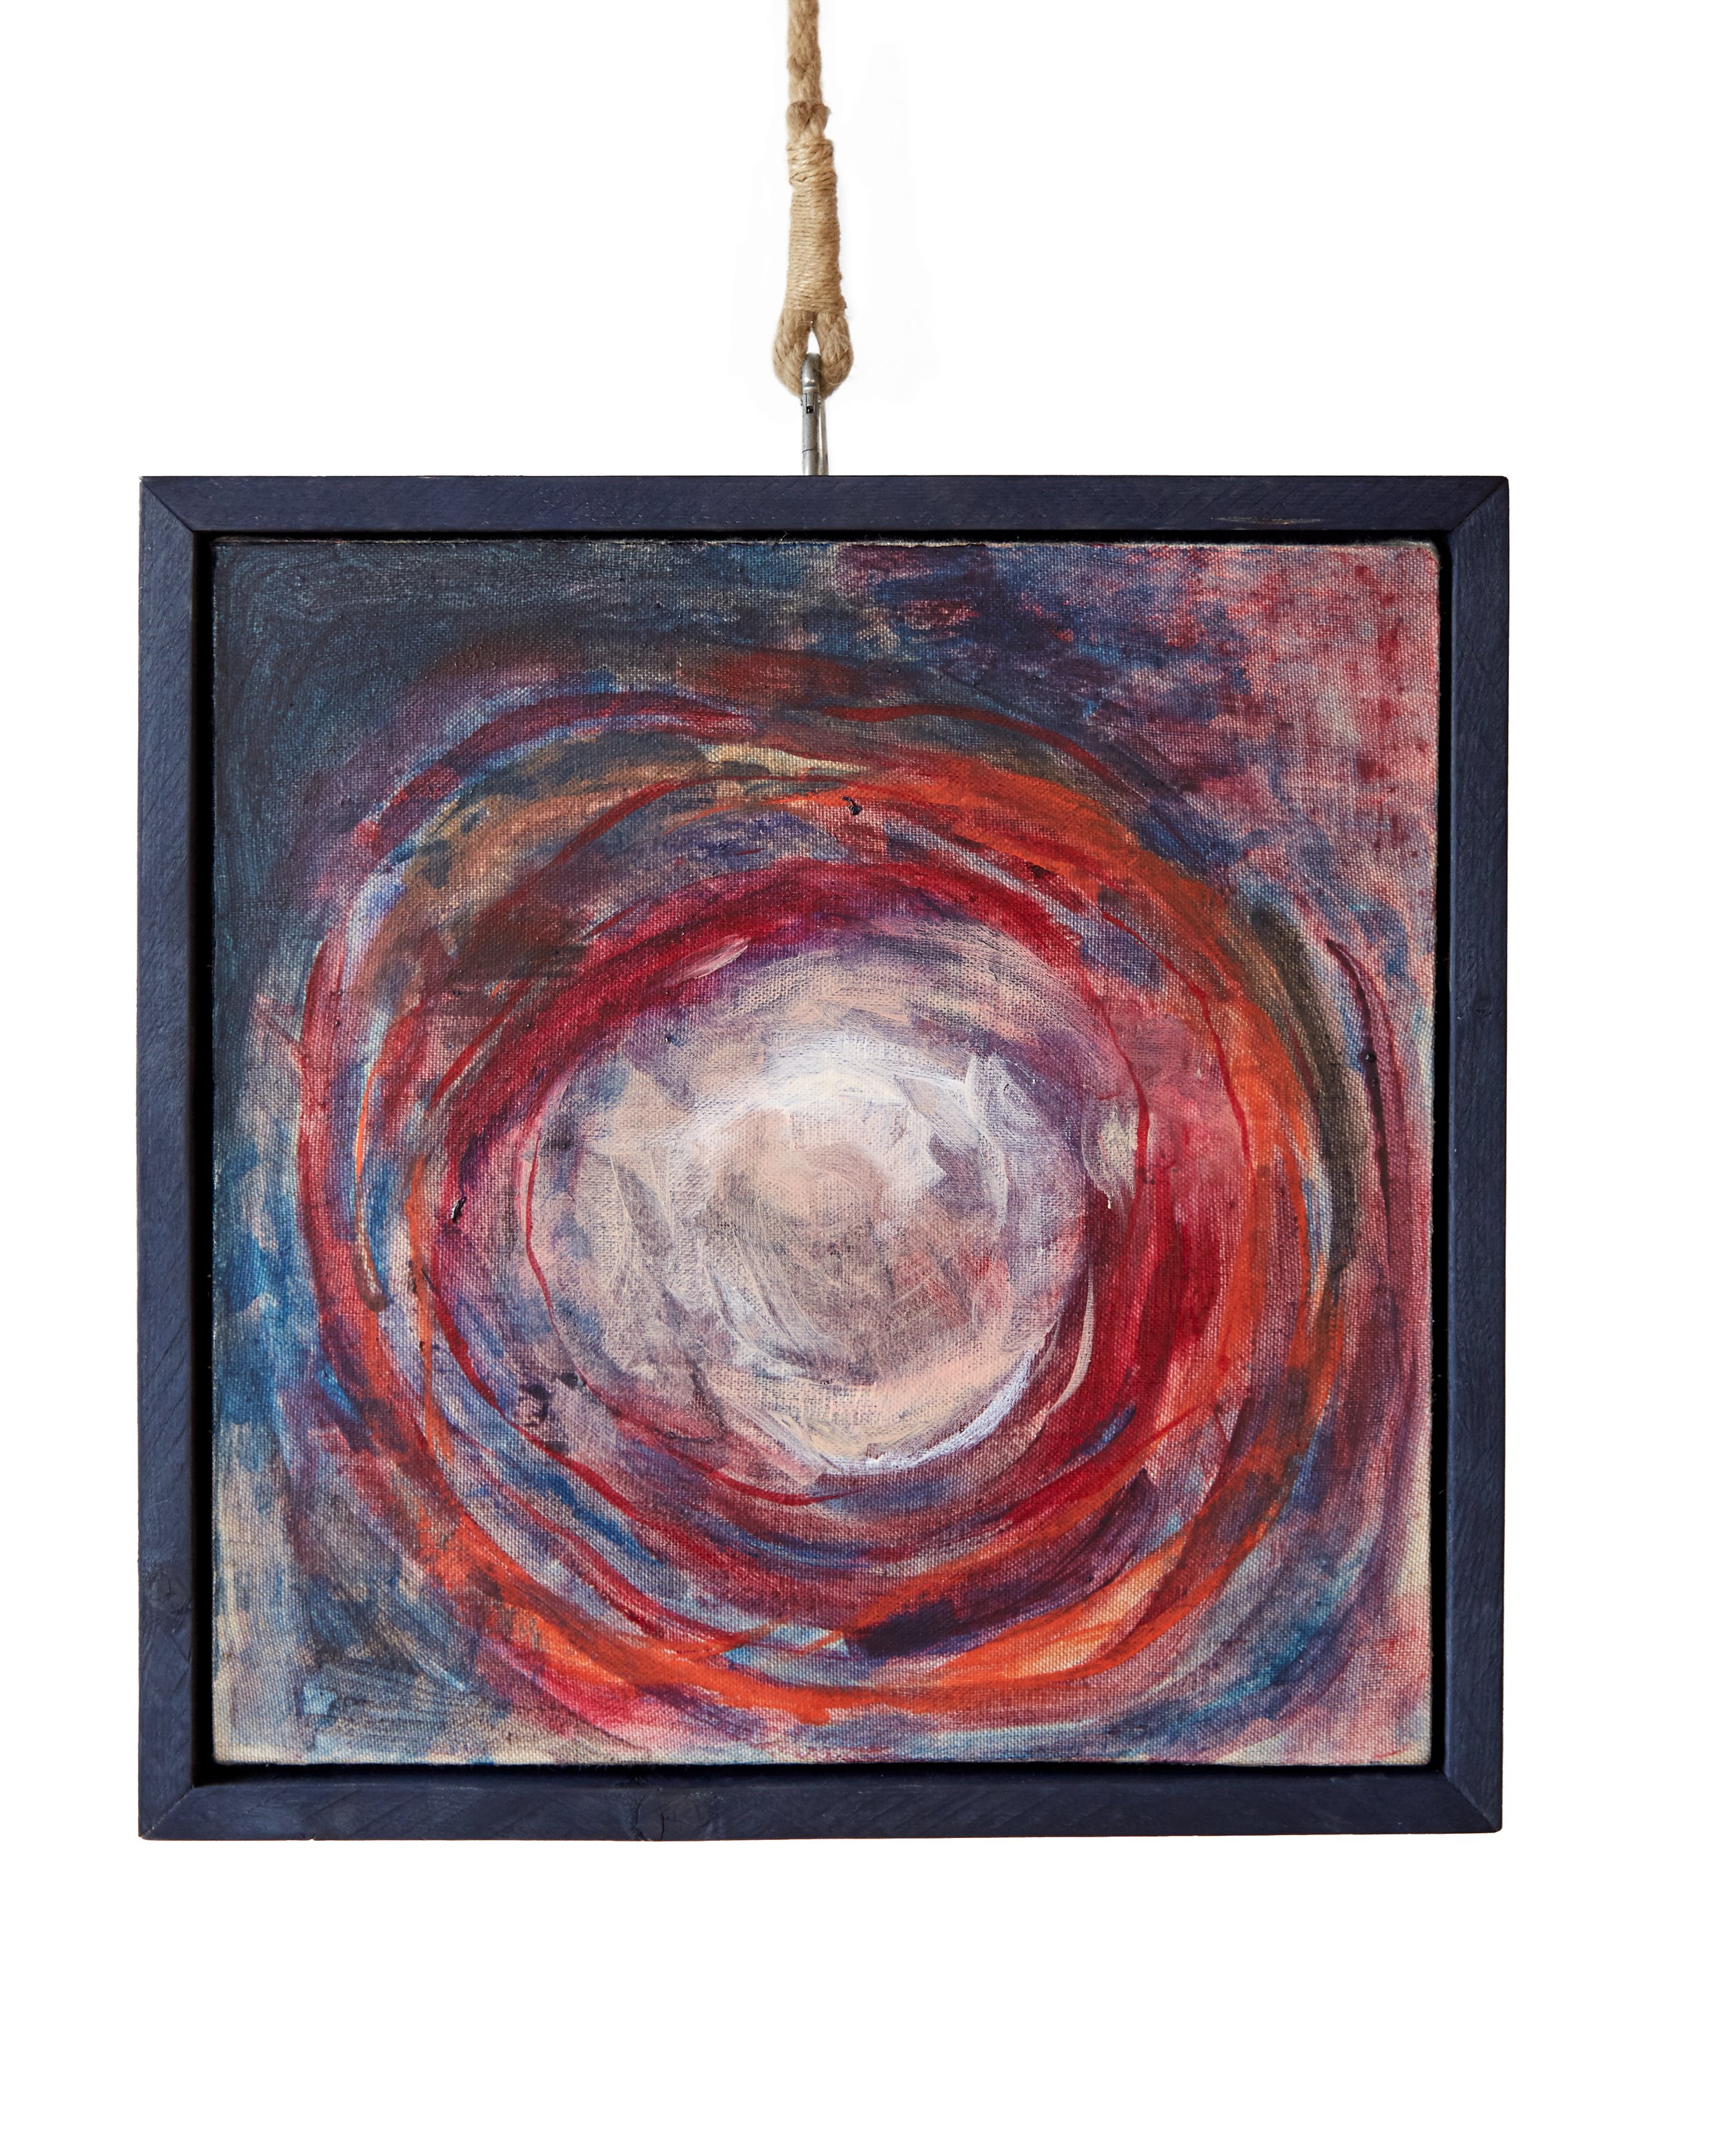   Moon,  2019, Acrylic on canvas, handmade oak frame. 50cm x 50cm. 